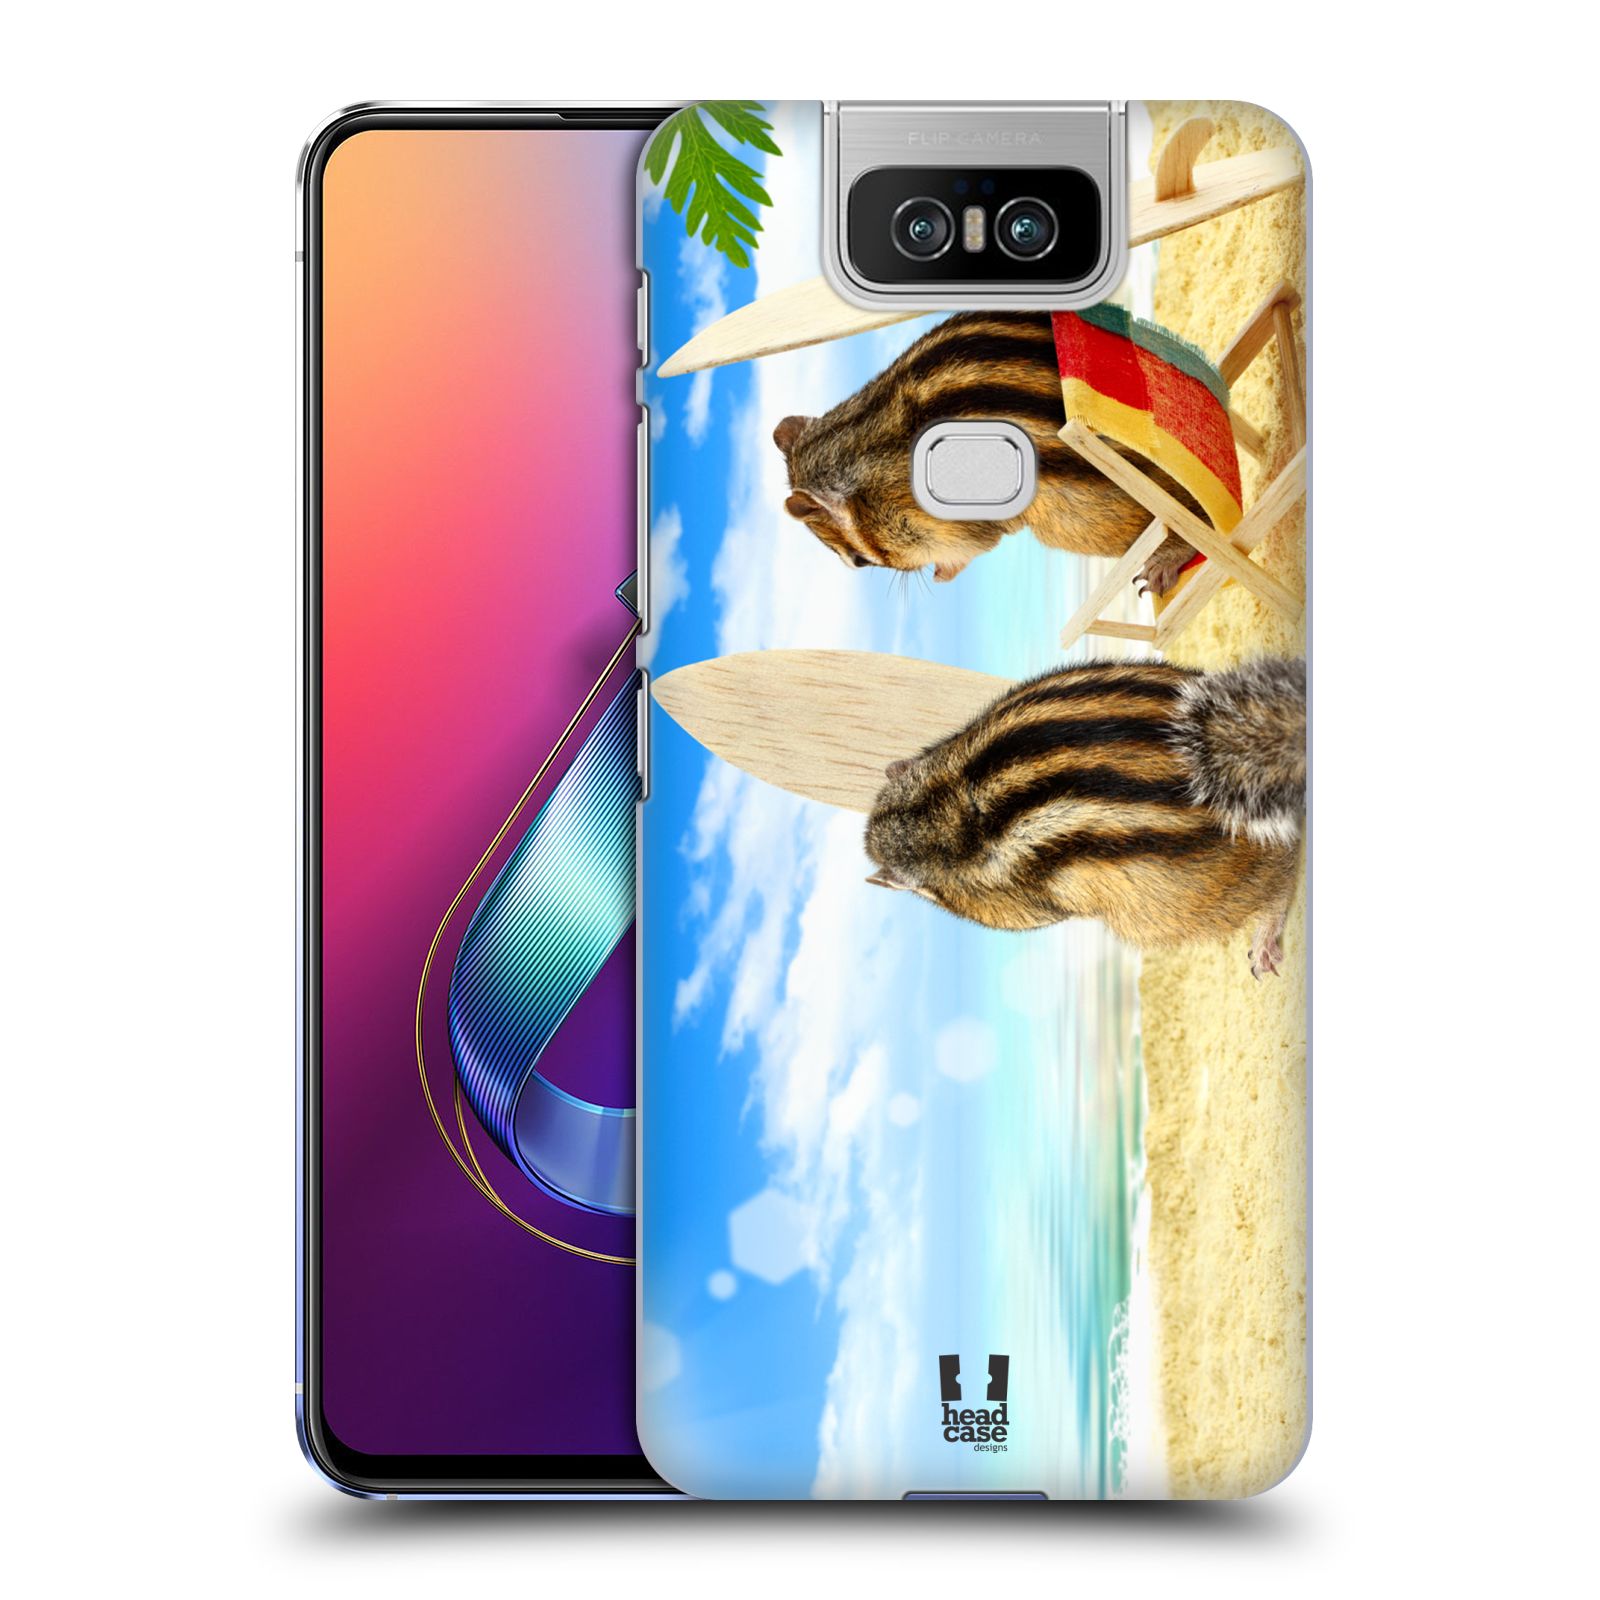 Pouzdro na mobil Asus Zenfone 6 ZS630KL - HEAD CASE - vzor Legrační zvířátka veverky surfaři u moře